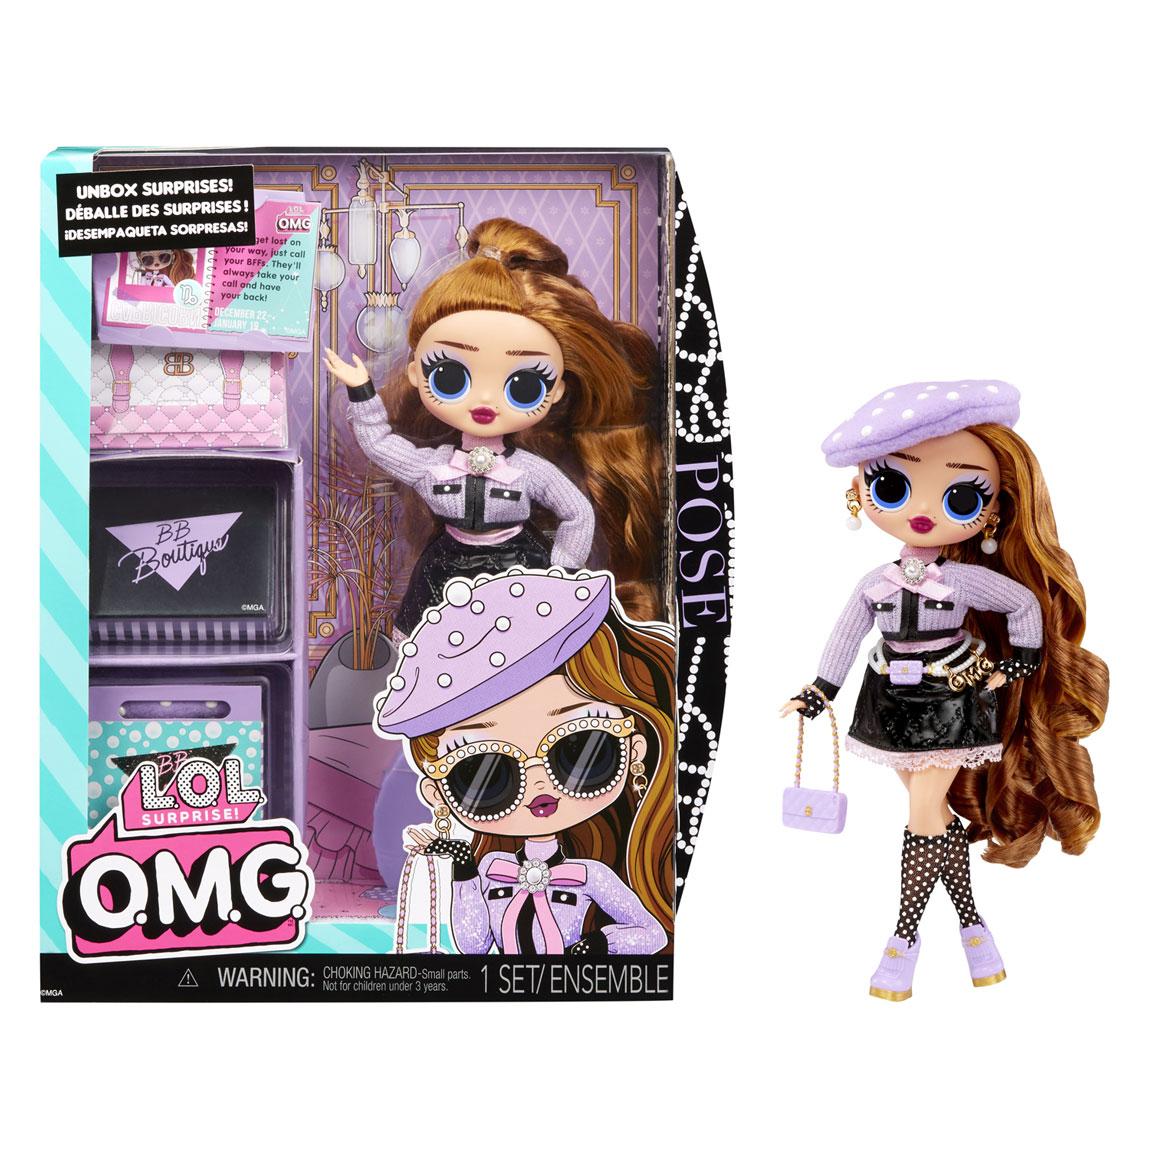 Buy LOL Surprise OMG Glam N' Go Glamper Doll Playset - 32cm | Dolls | Argos